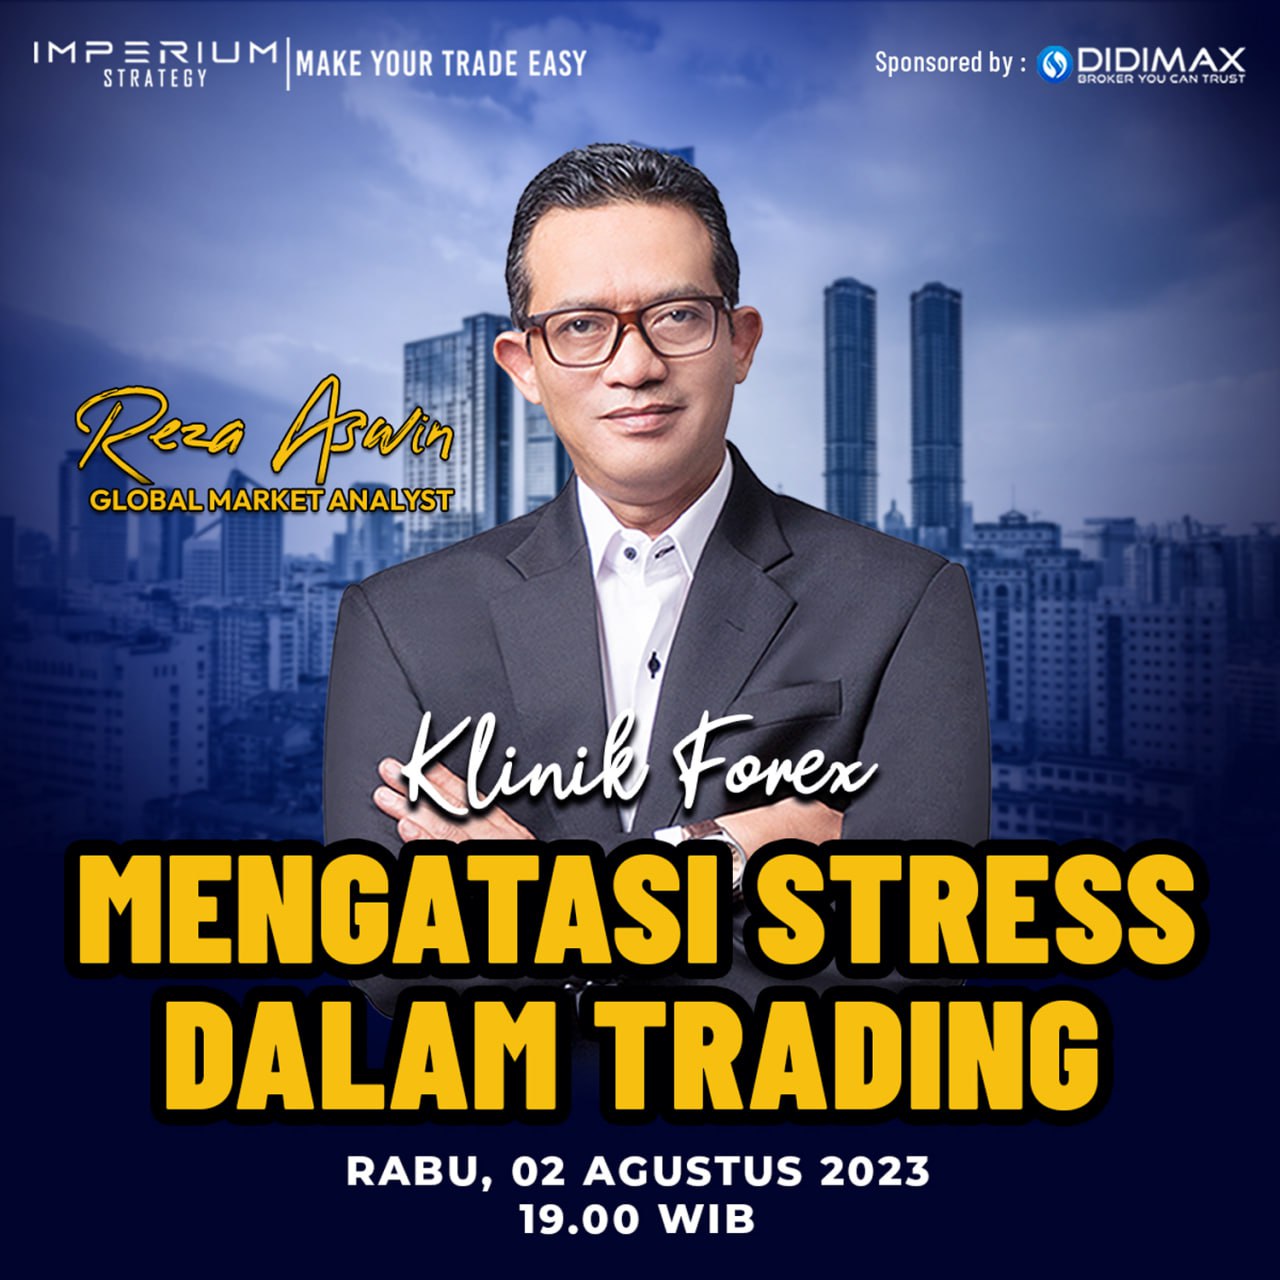 kf - mengatasi stress dalam trading